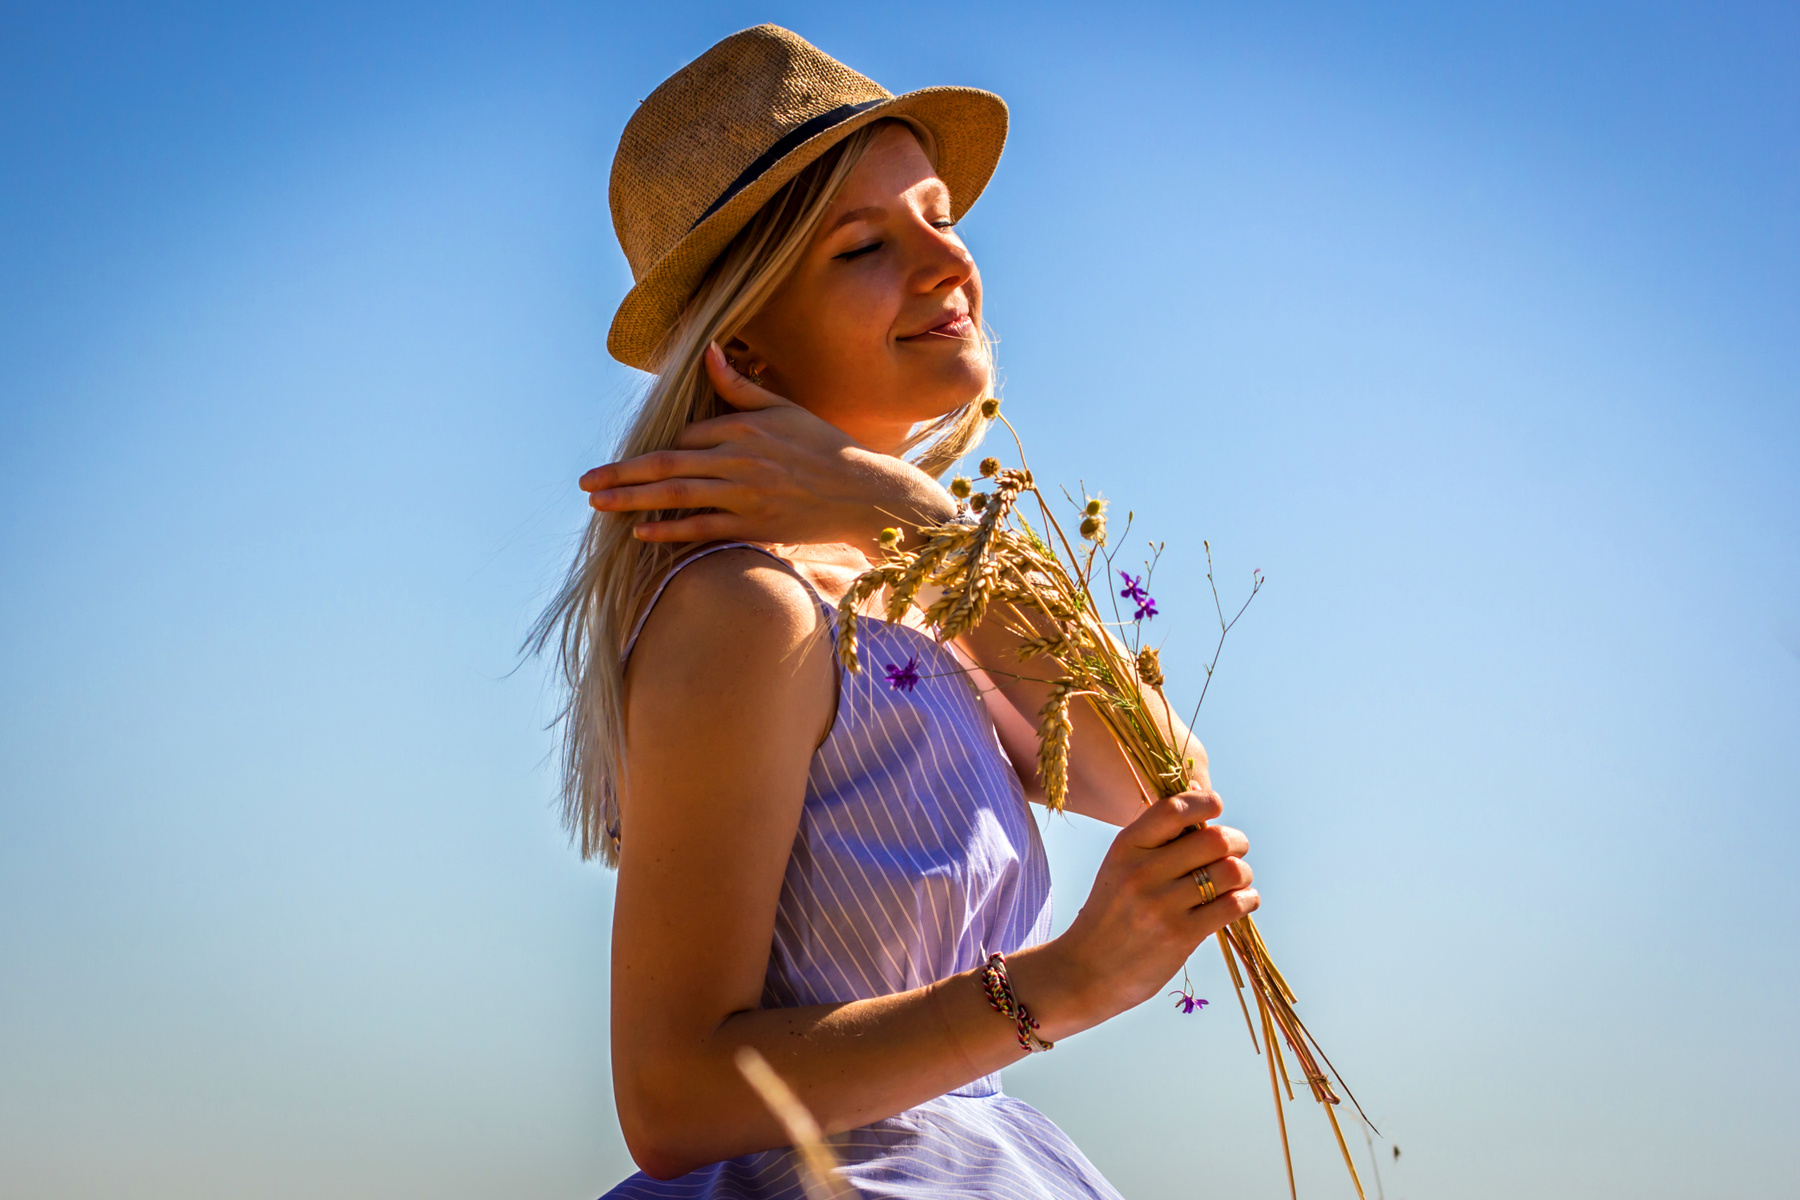 *** пшеница поле лето июльское солнце красивое место девушка колосья ветер раздувает волосы букет из колосьев ранее утро встало